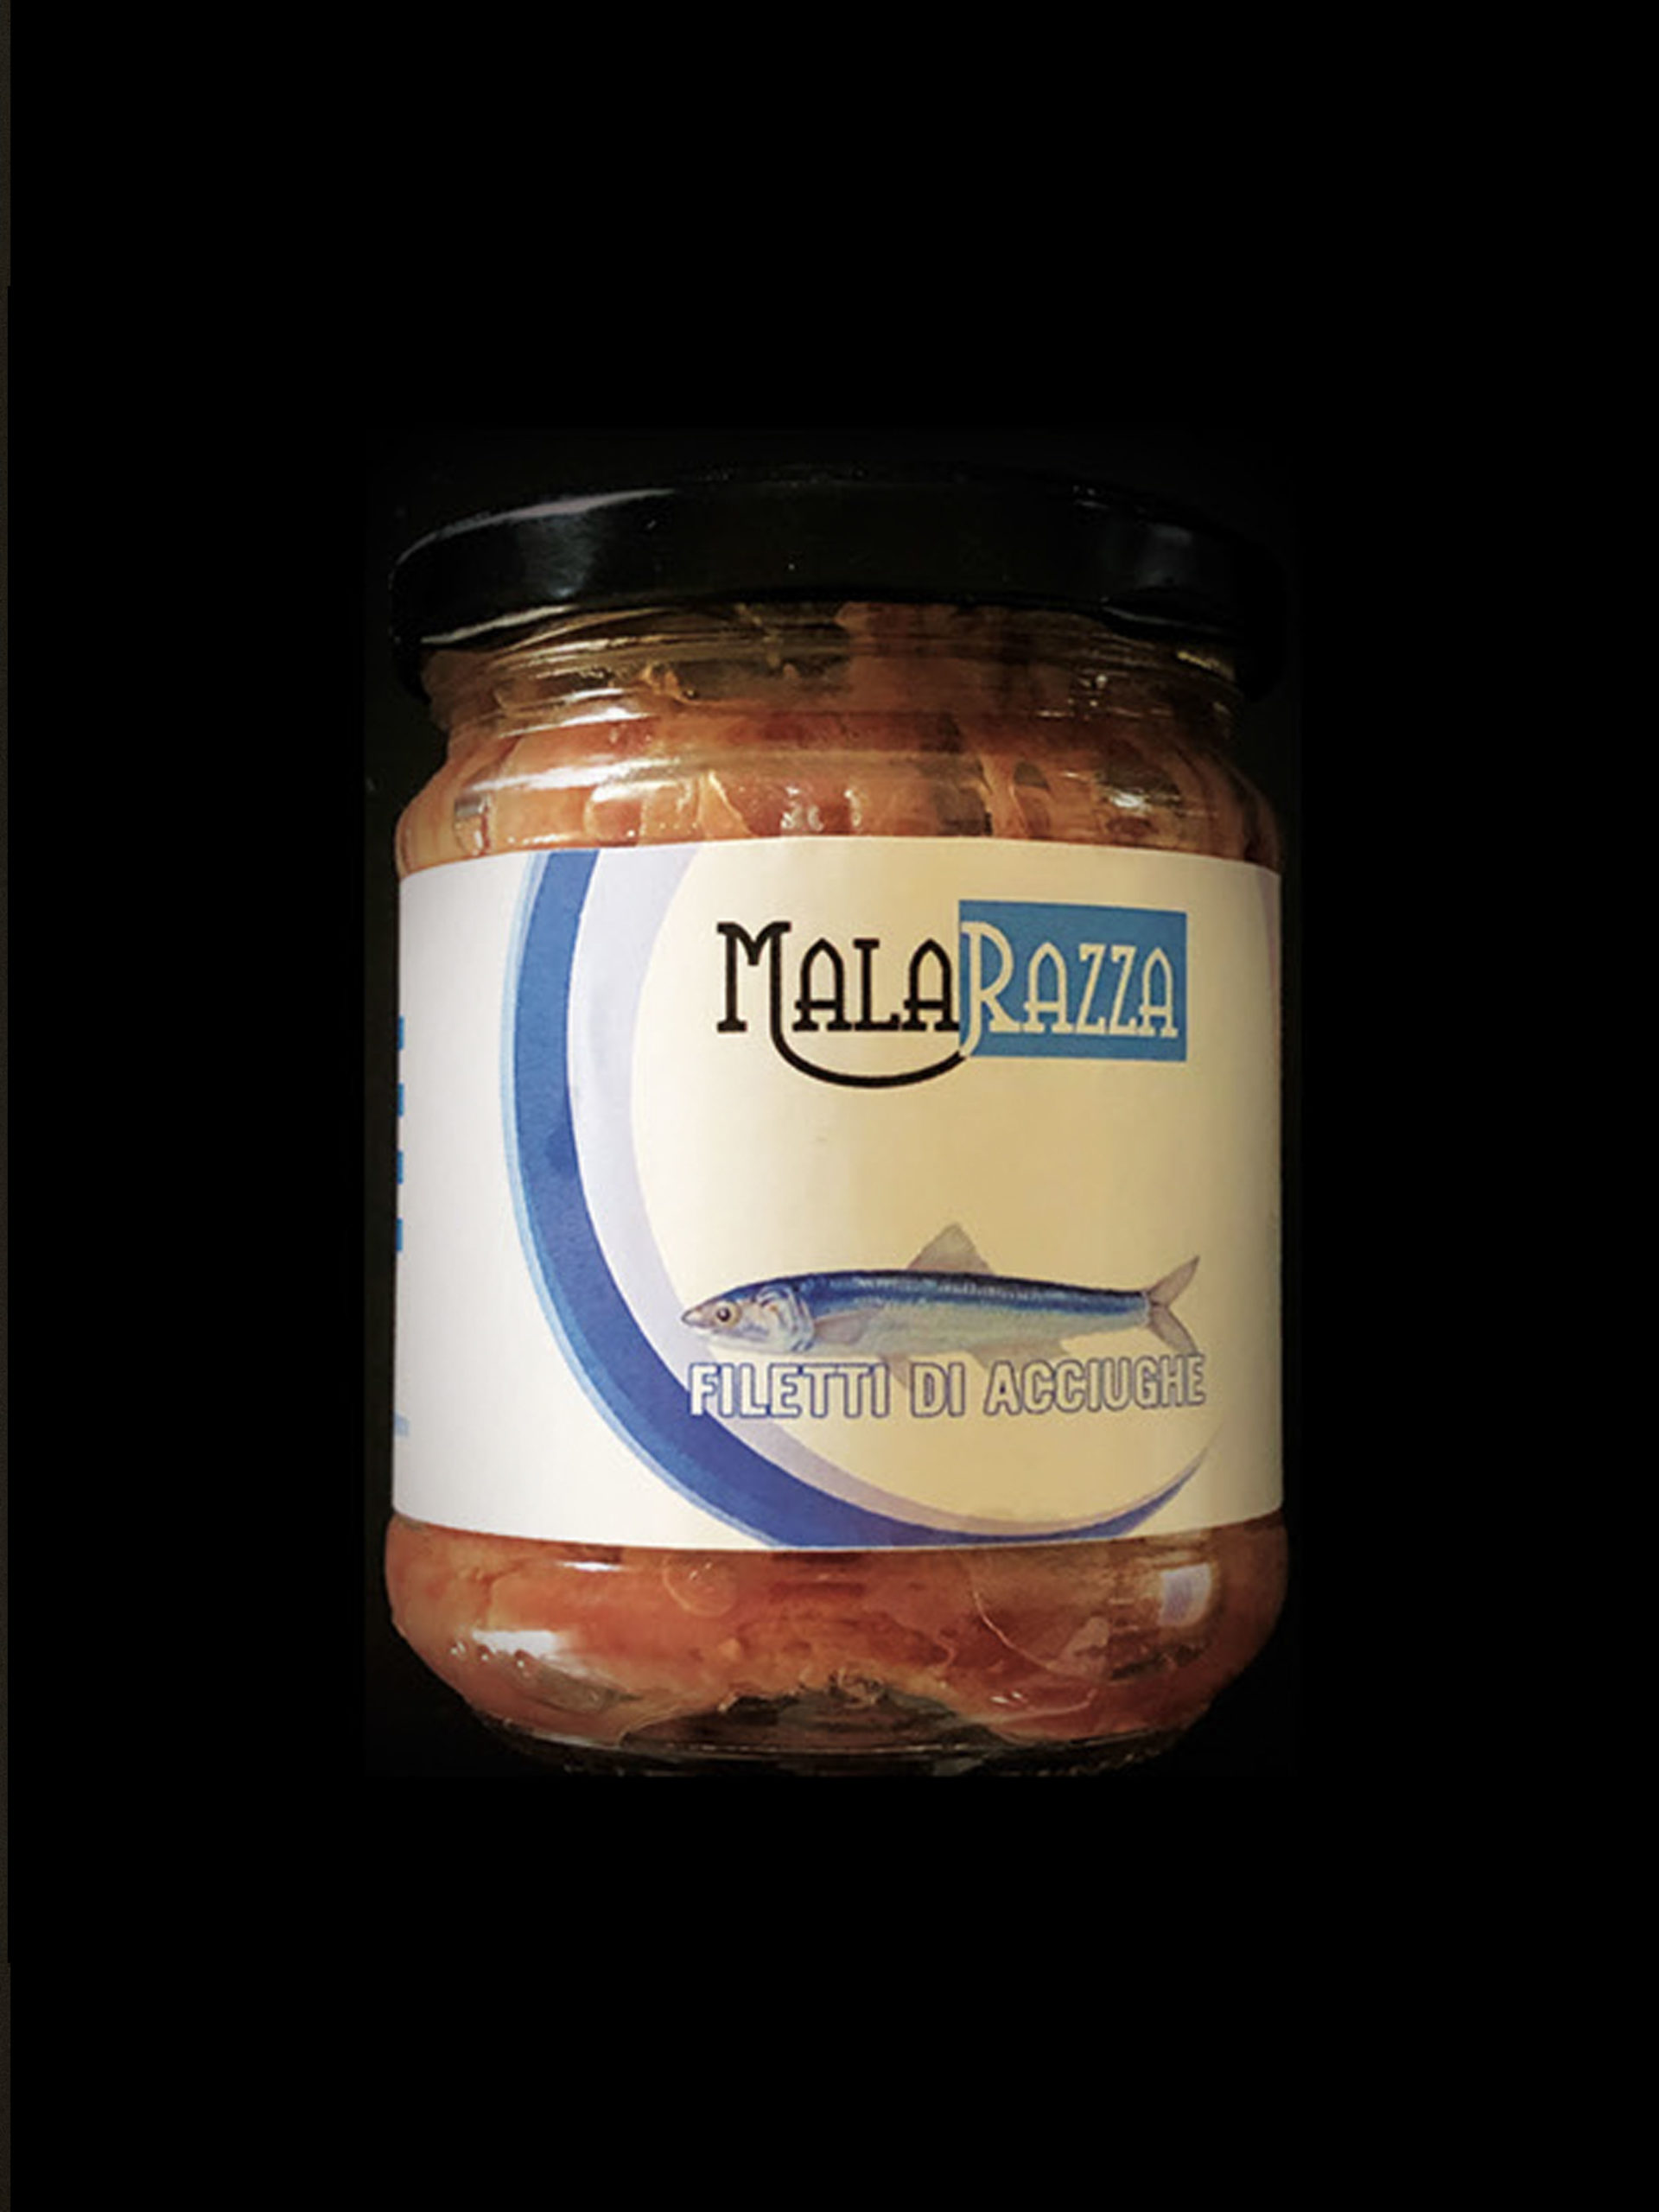 malarazza food made in italy filetti-di-acciuga